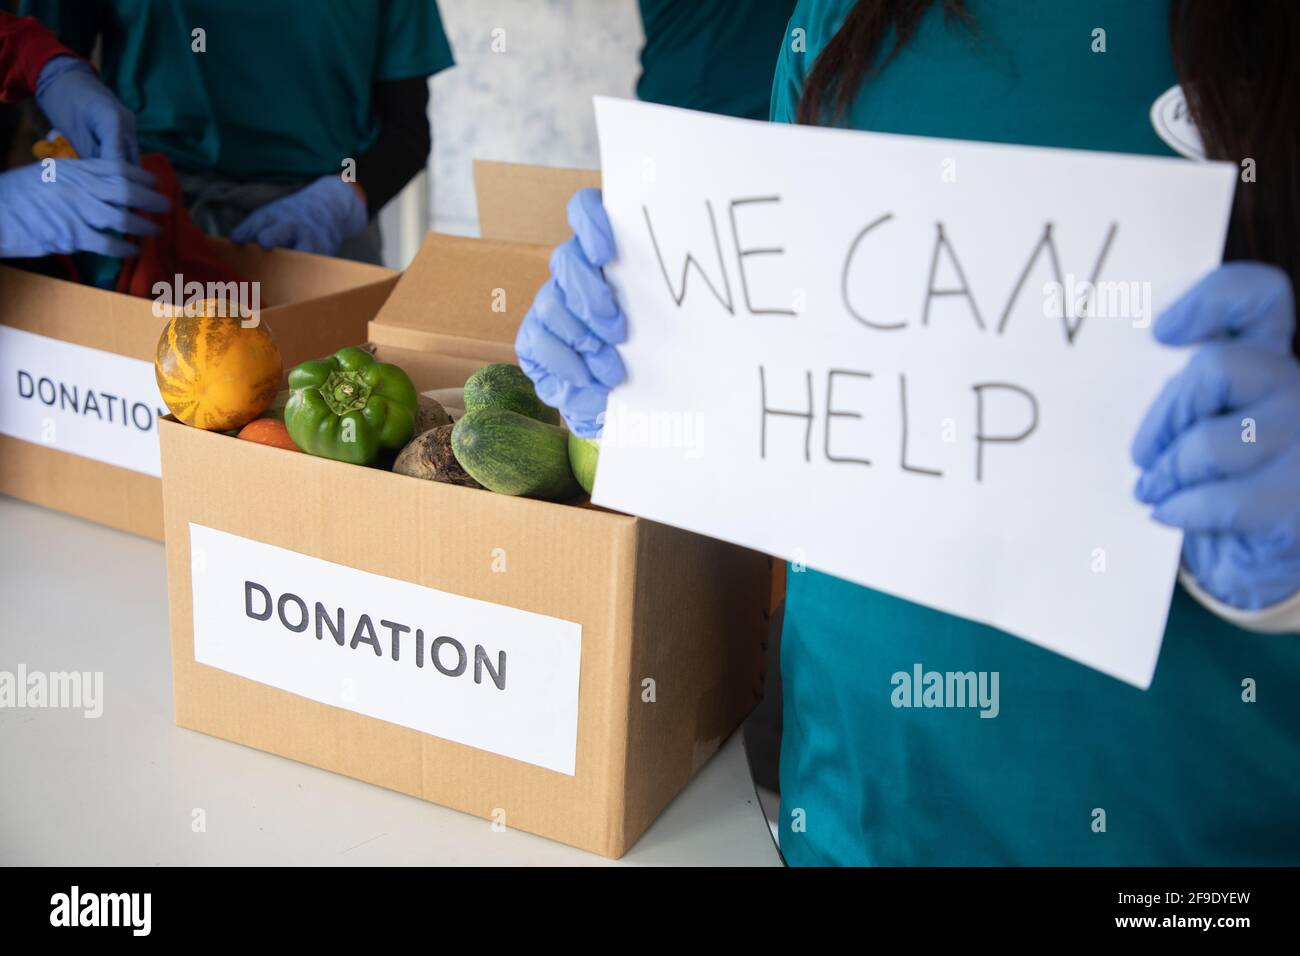 Se concentrer sur les légumes, la tenue de bénévoles nous pouvons aider à signer le tableau pendant les dons tandis que d'autres bénévoles sont occupés de travailler la formation - concept de demander Banque D'Images